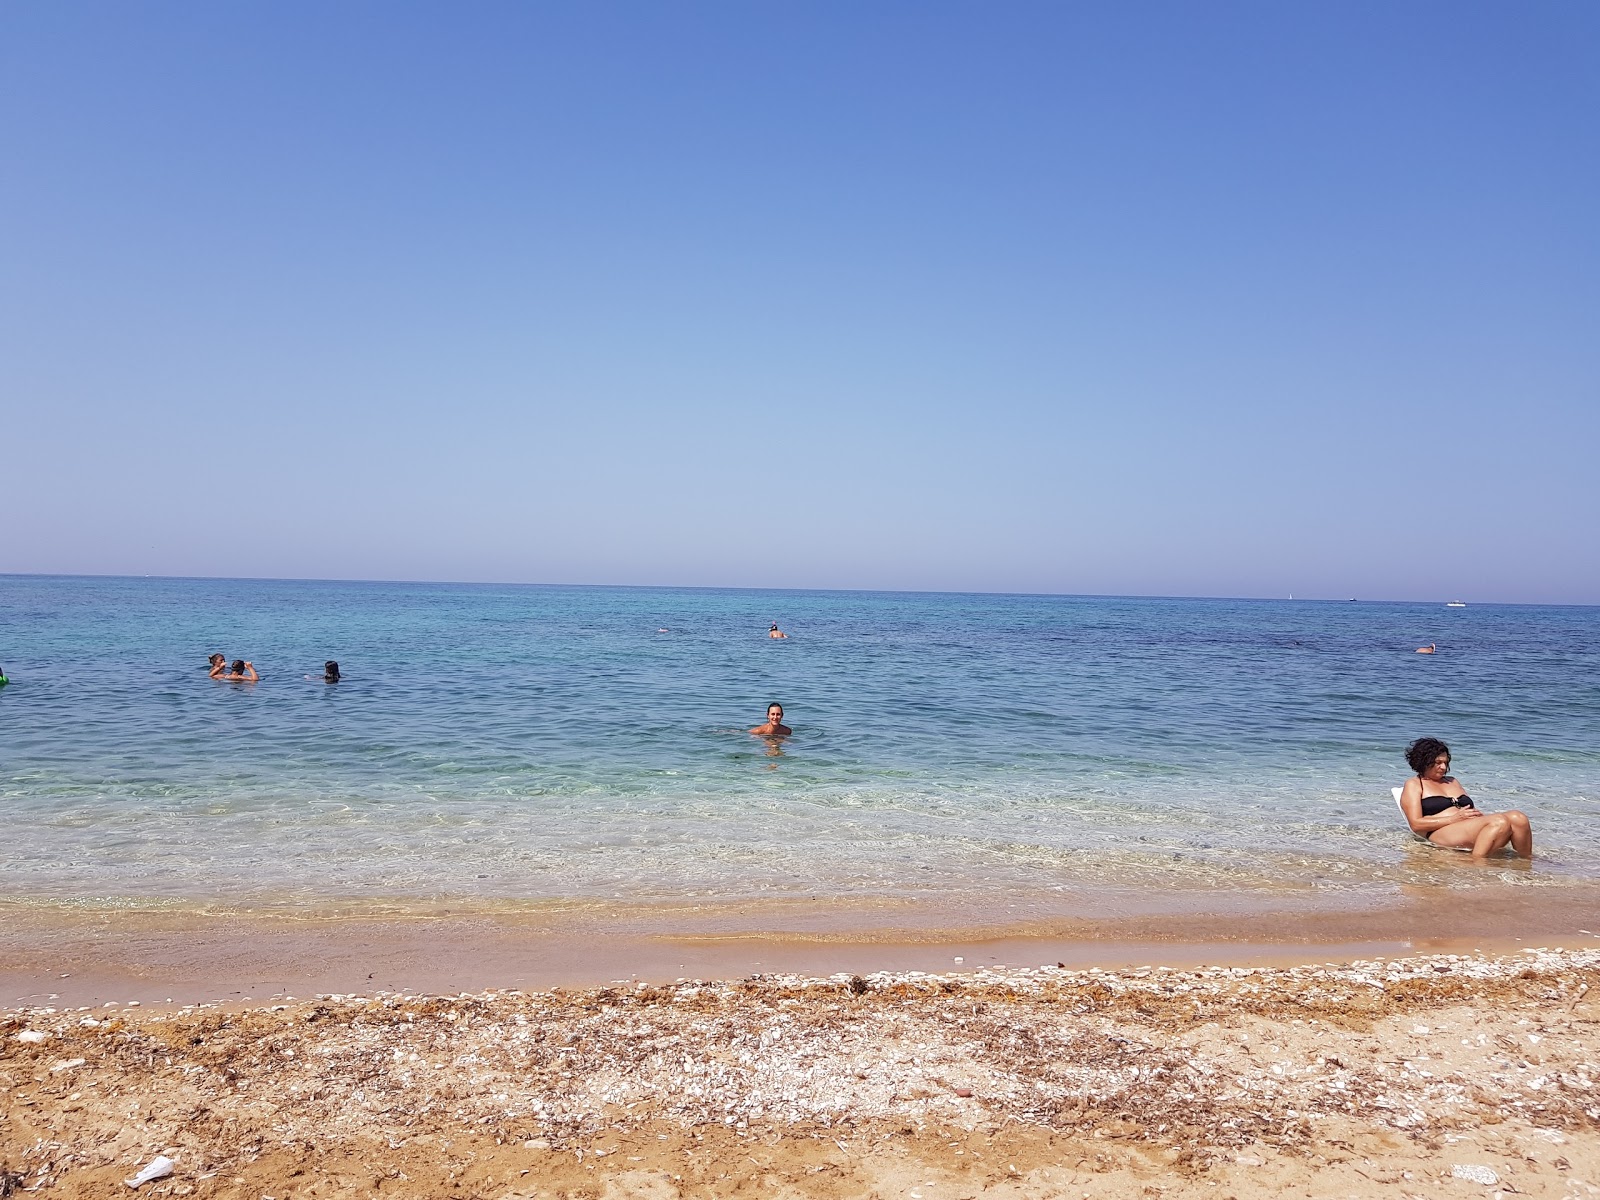 Fotografie cu La Fonte beach cu o suprafață de apă pură albastră